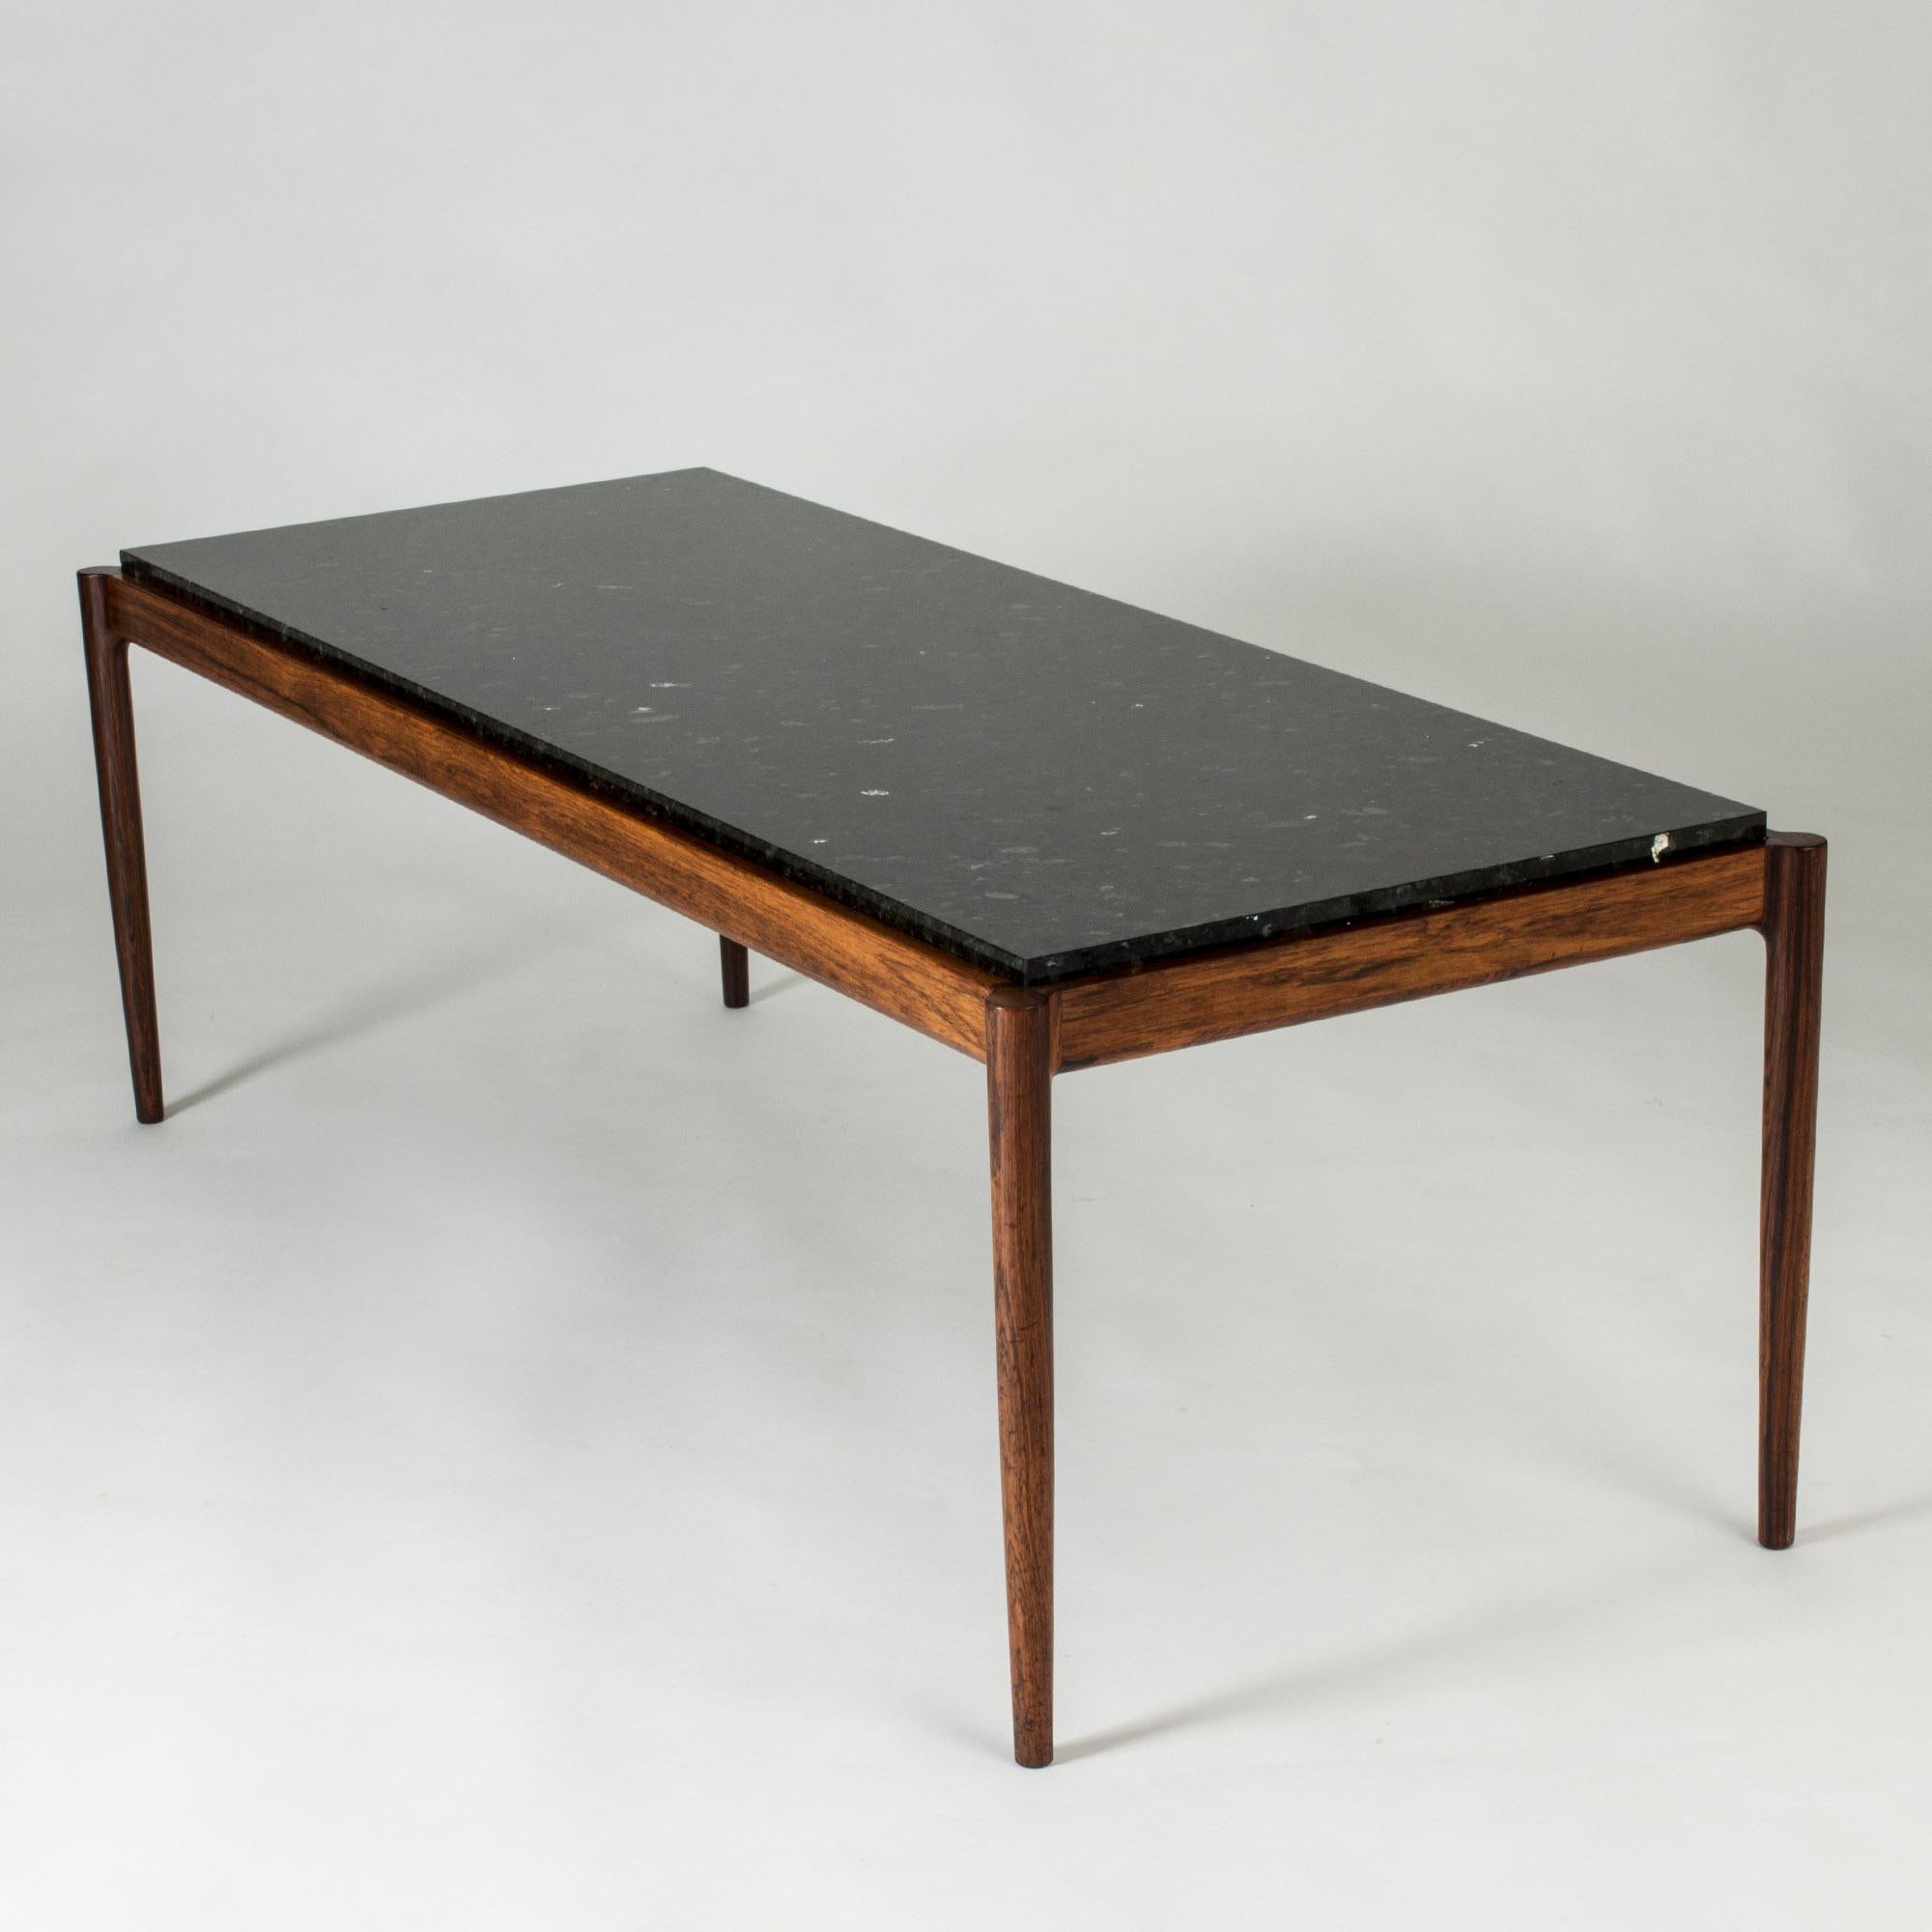 Elegante mesa de centro de Ib Kofod-Larsen, con armazón de palisandro y tablero de mármol negro. Esquinas suavemente redondeadas, sutil brillo en el tablero de la mesa.